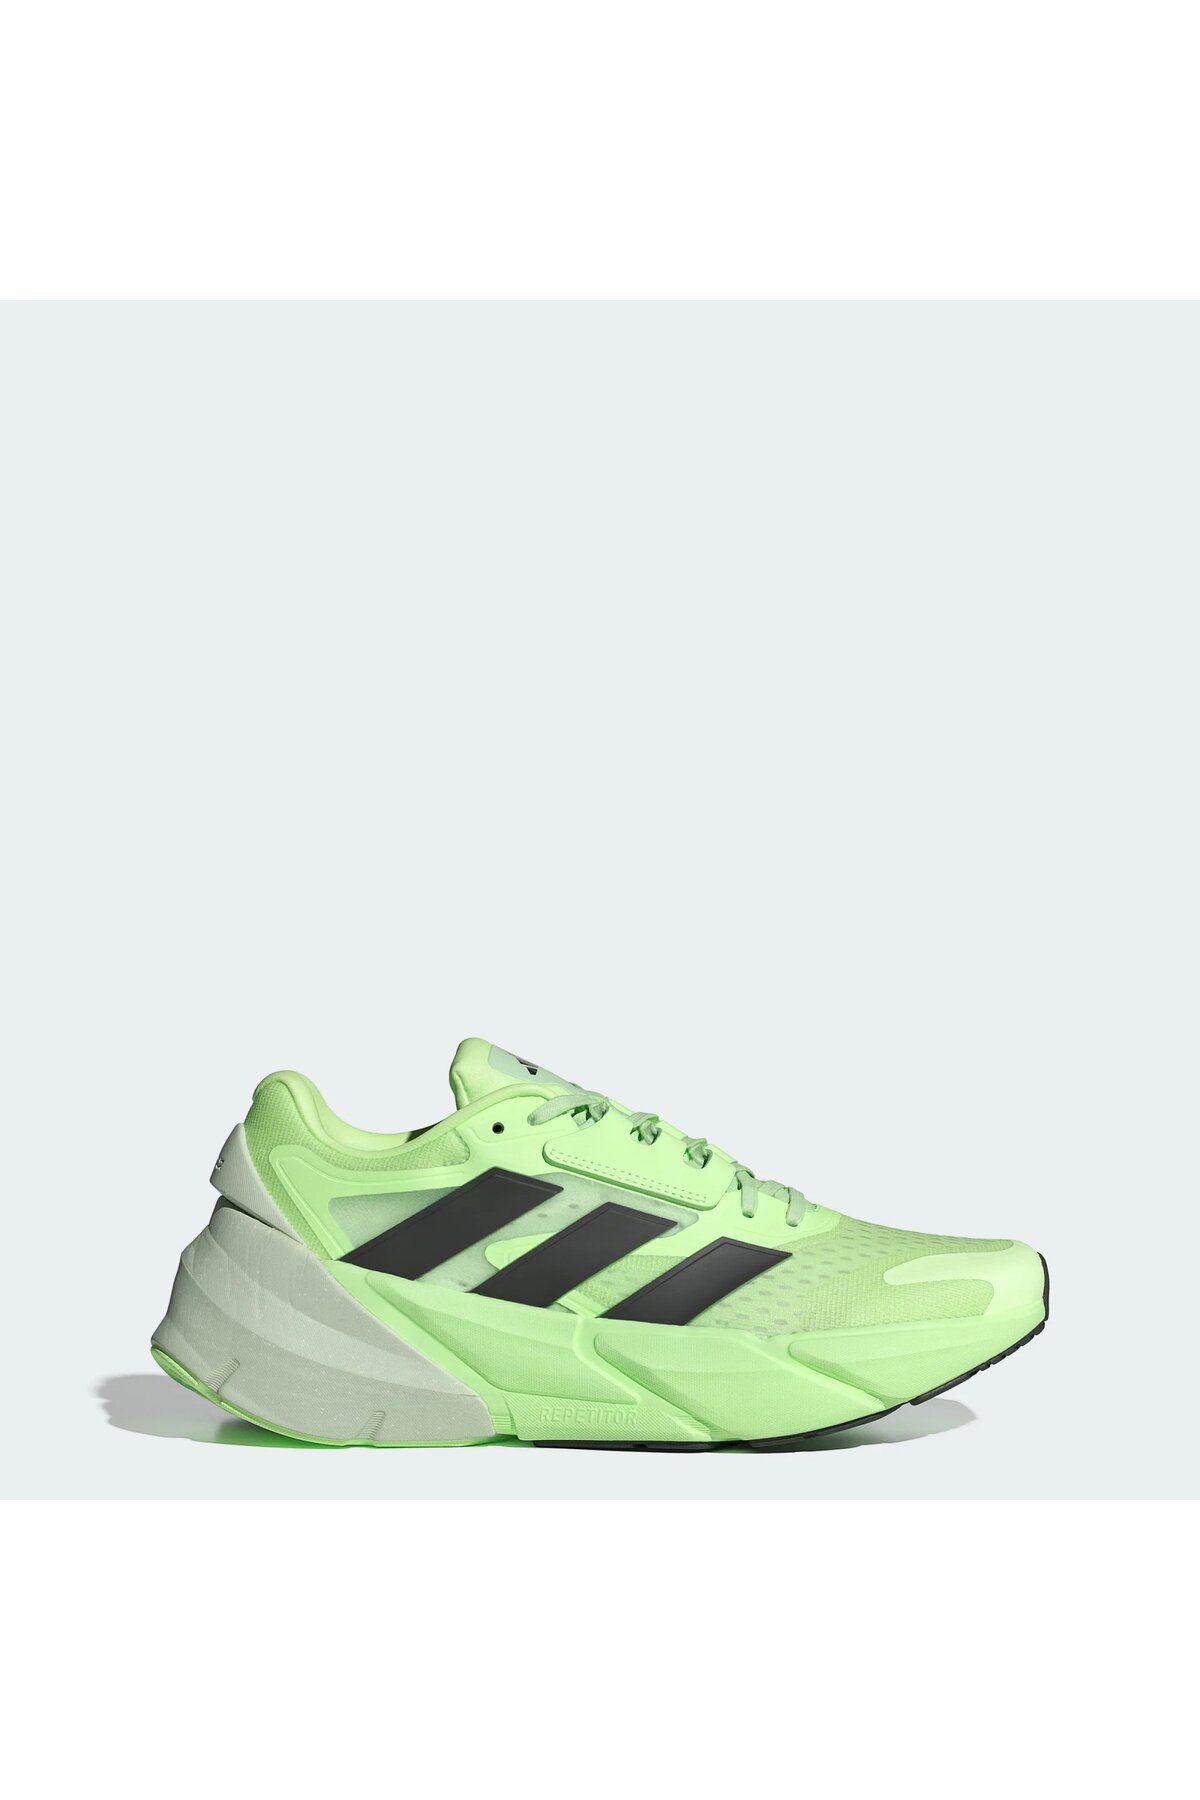 adidas ADISTAR 2 M Yeşil Erkek Koşu Ayakkabısı